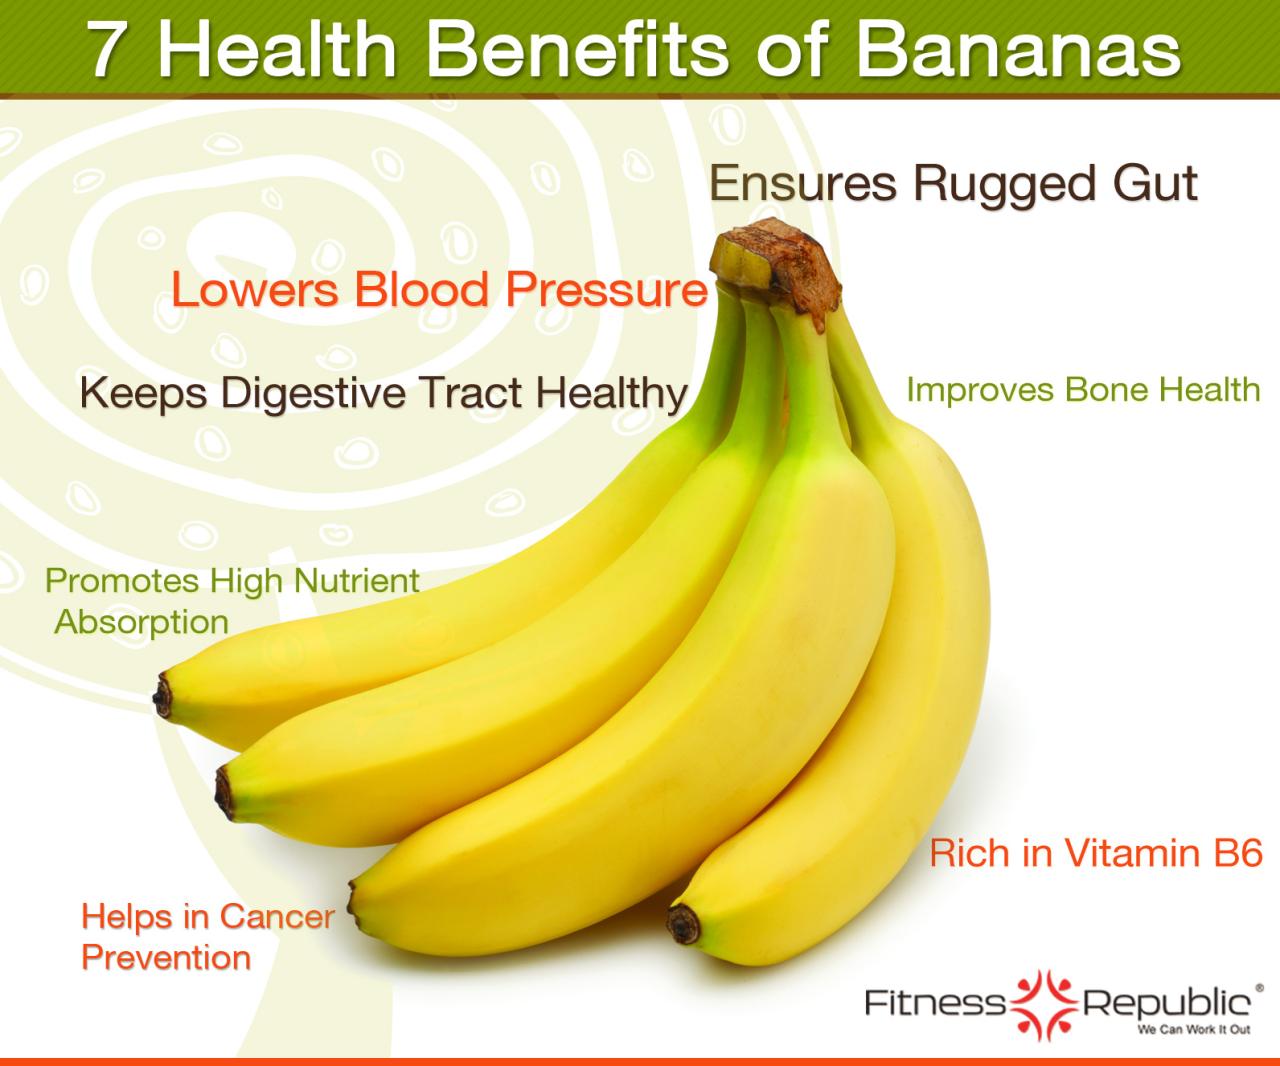 Manfaat buah pisang untuk wanita